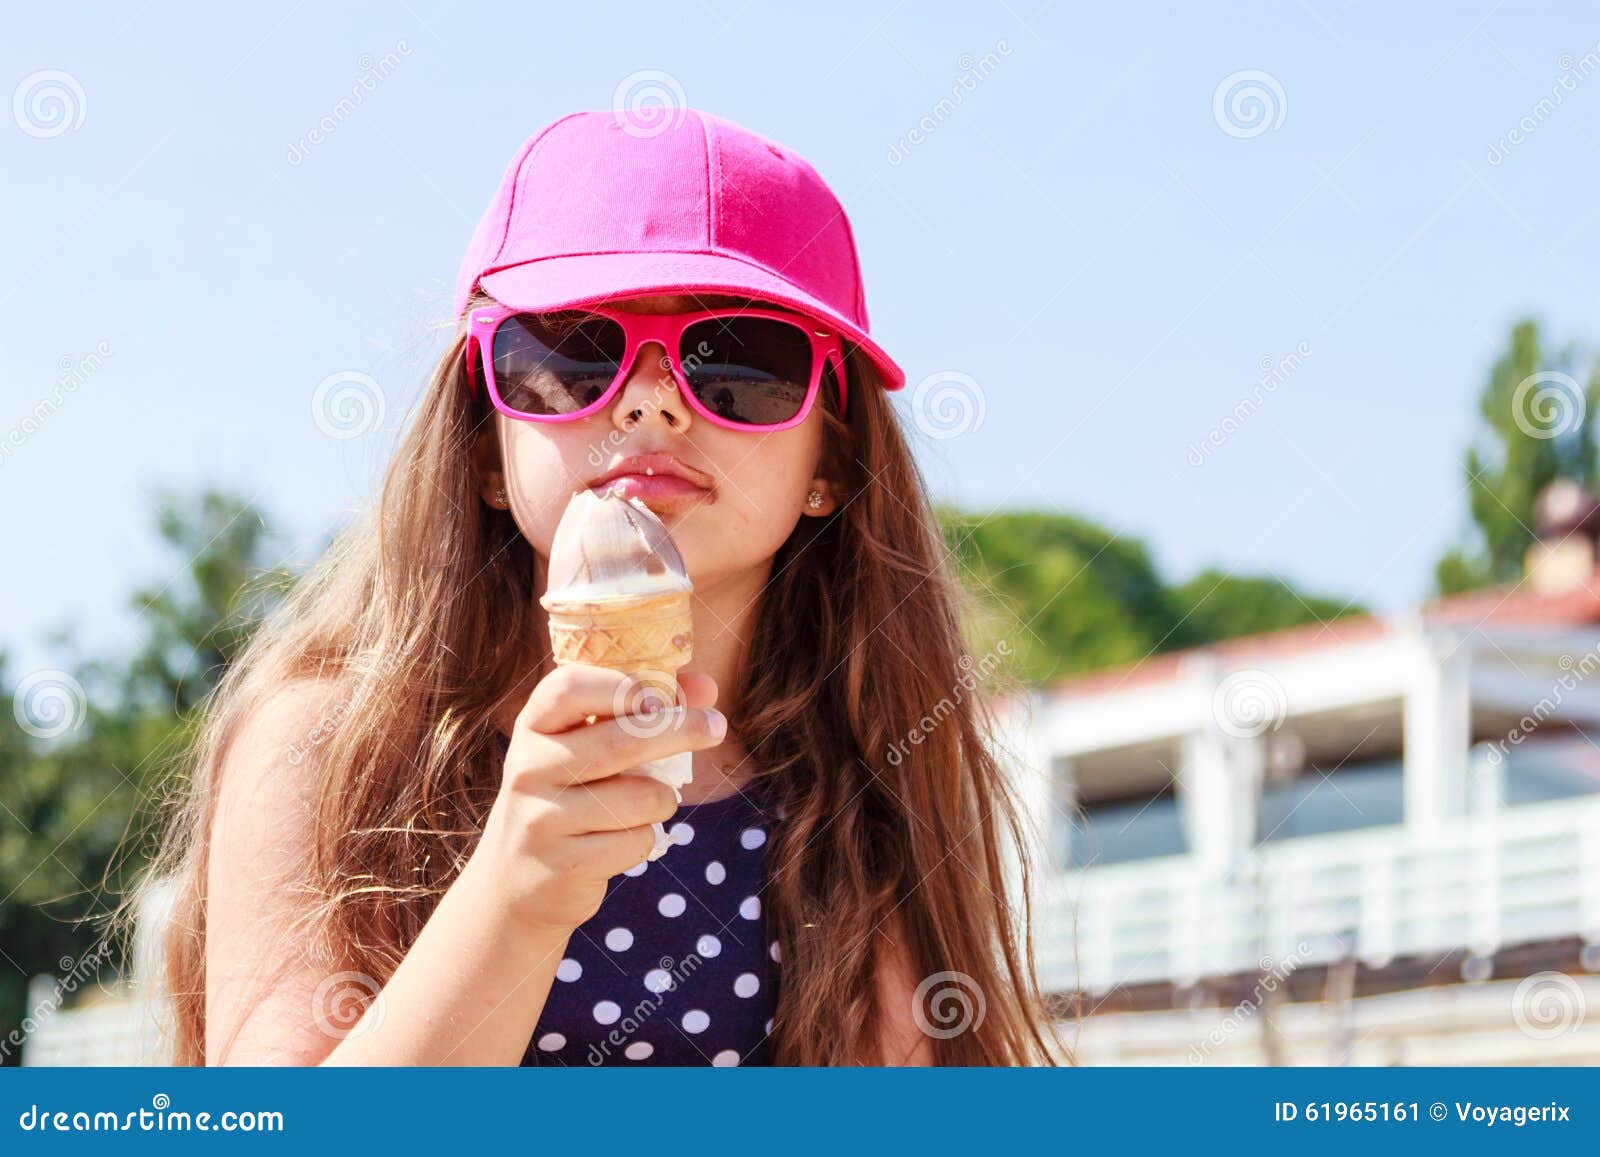 Есть мороженое ночью. Девочки подростки с мороженным. Девушка с мороженым. Девочка ест мороженое. Девушка лето мороженое.